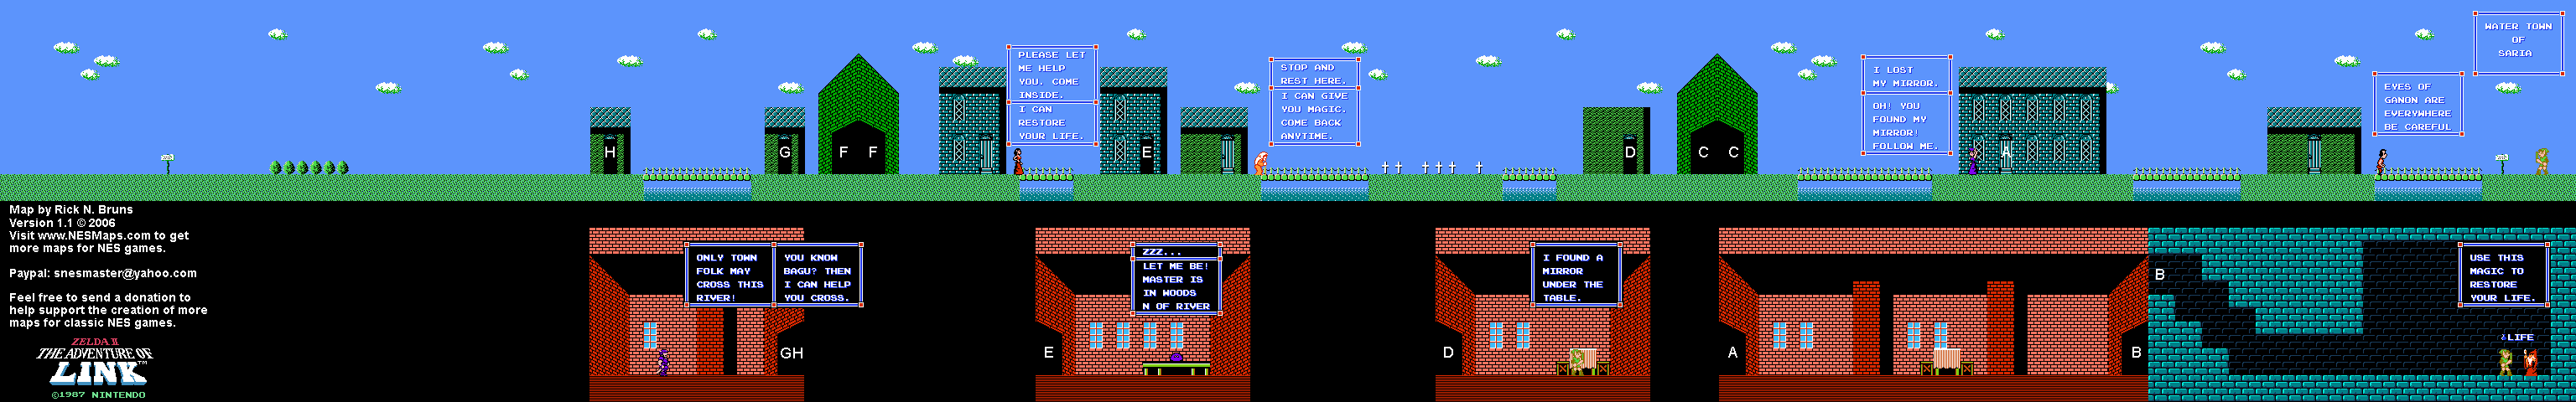 Zelda II The Adventure of Link - Saria Town [10] - NES Map